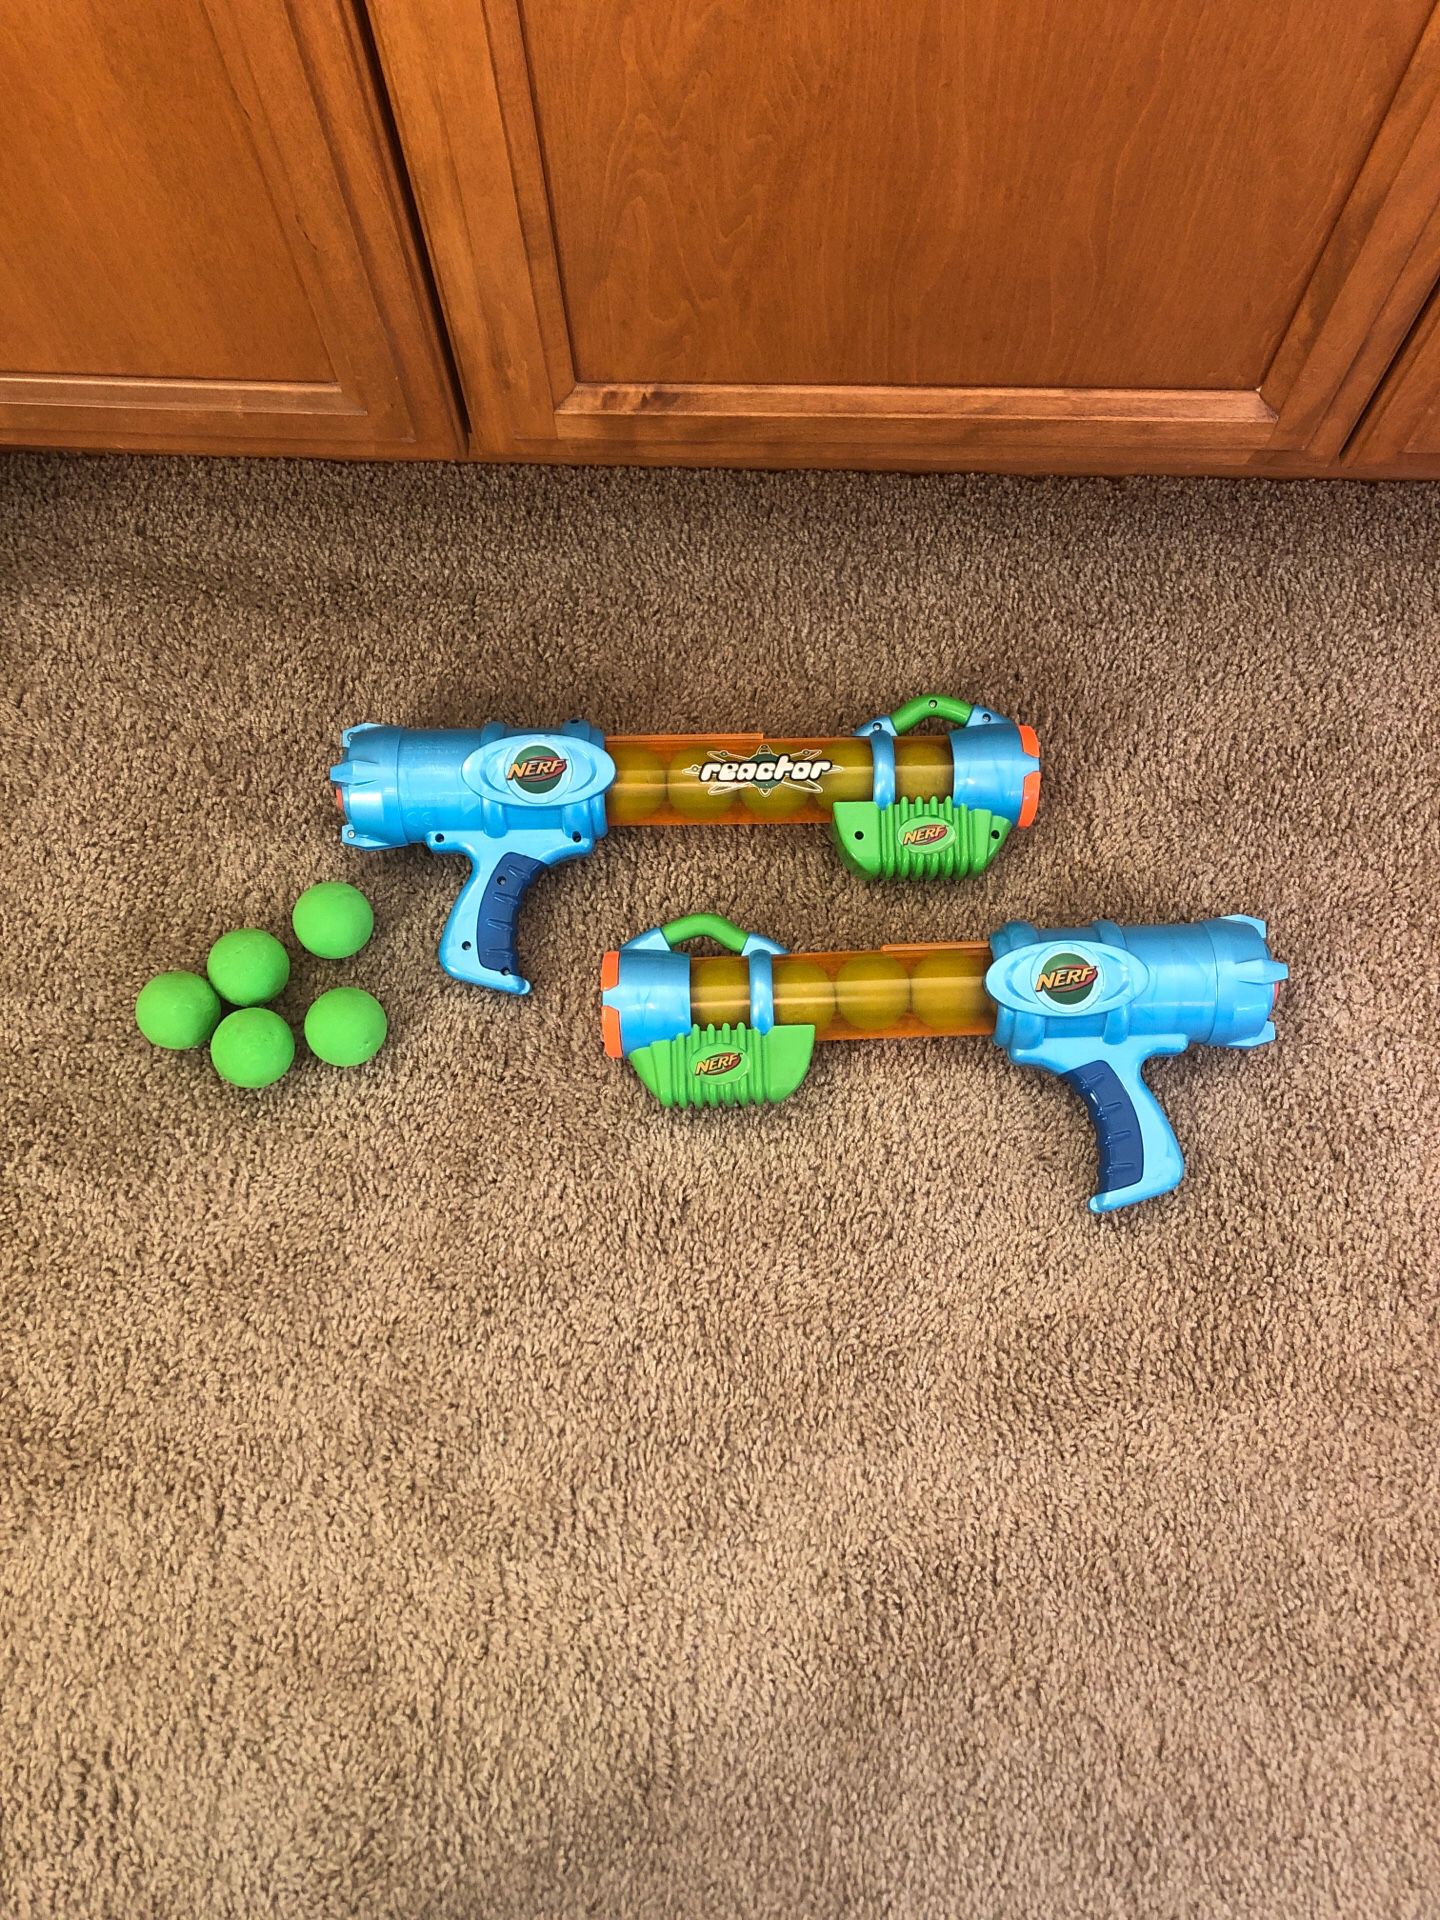 2 - Nerf Reactor Toys